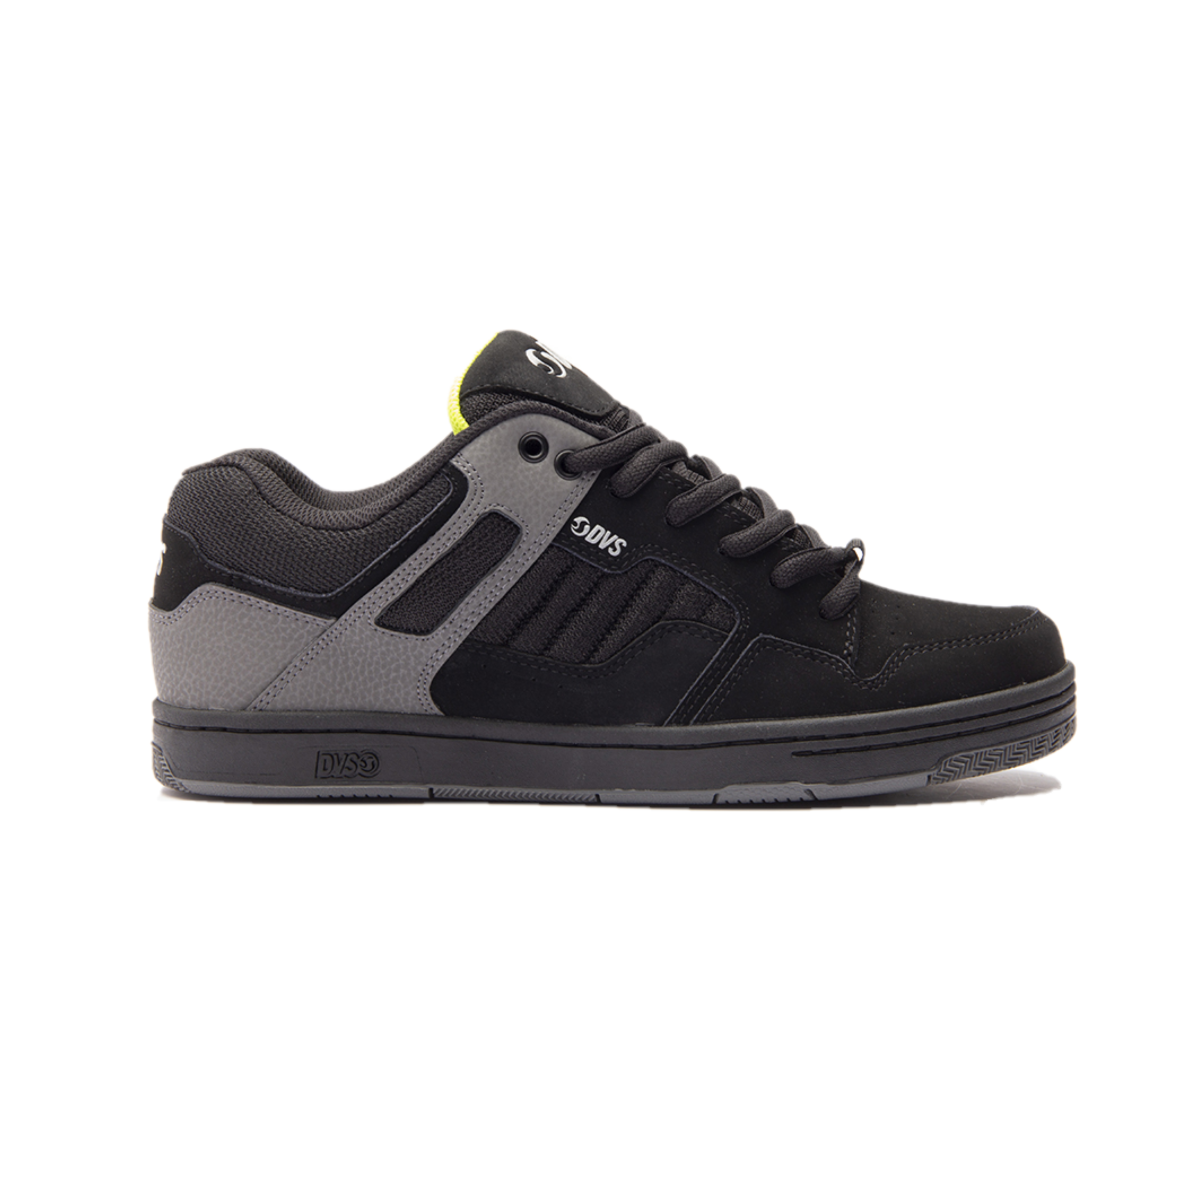 DVS F0000278037 ENDURO 125 MN'S (Medium) Black/Charcoal/Lime Leather & Mesh Skate Shoes